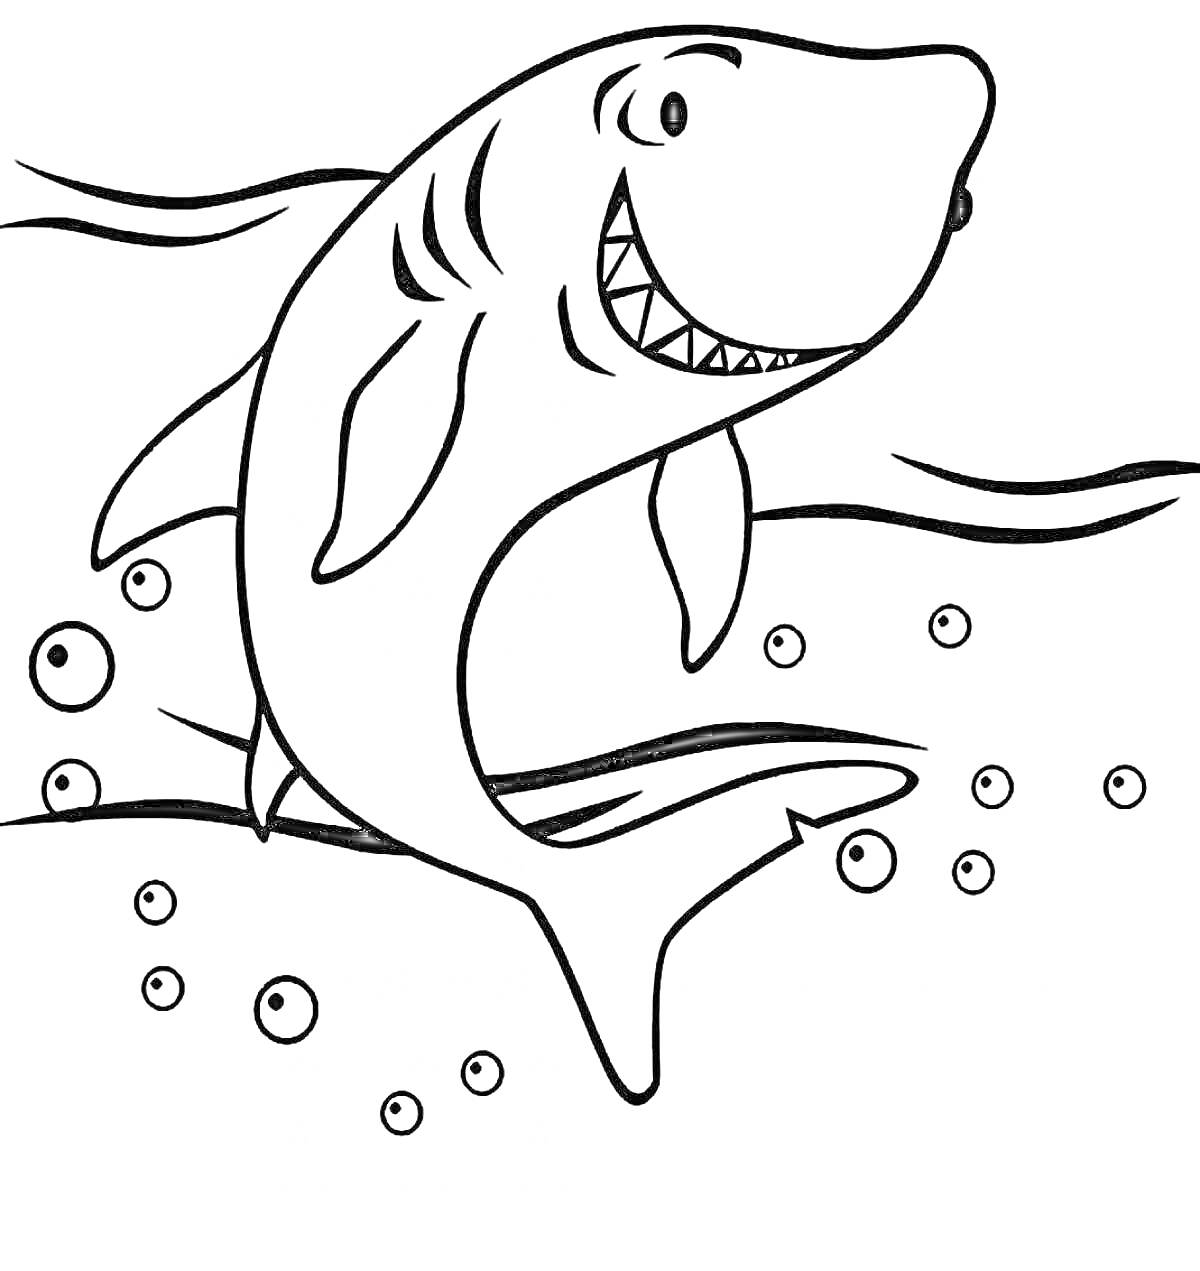 Раскраска Акула под водой с пузырьками